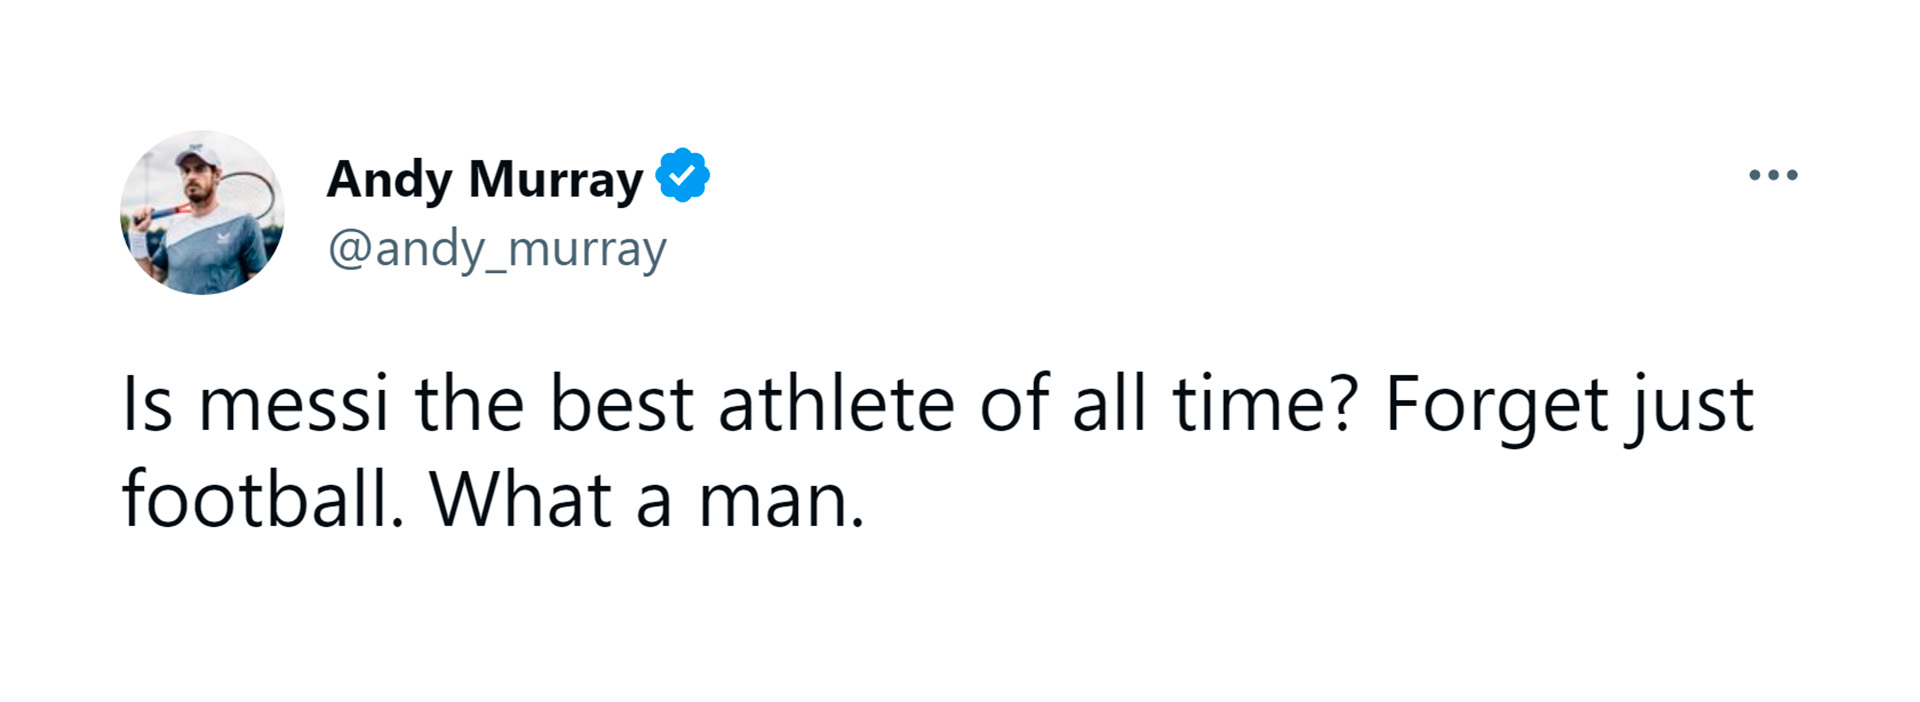 El mensaje de Andy Murray